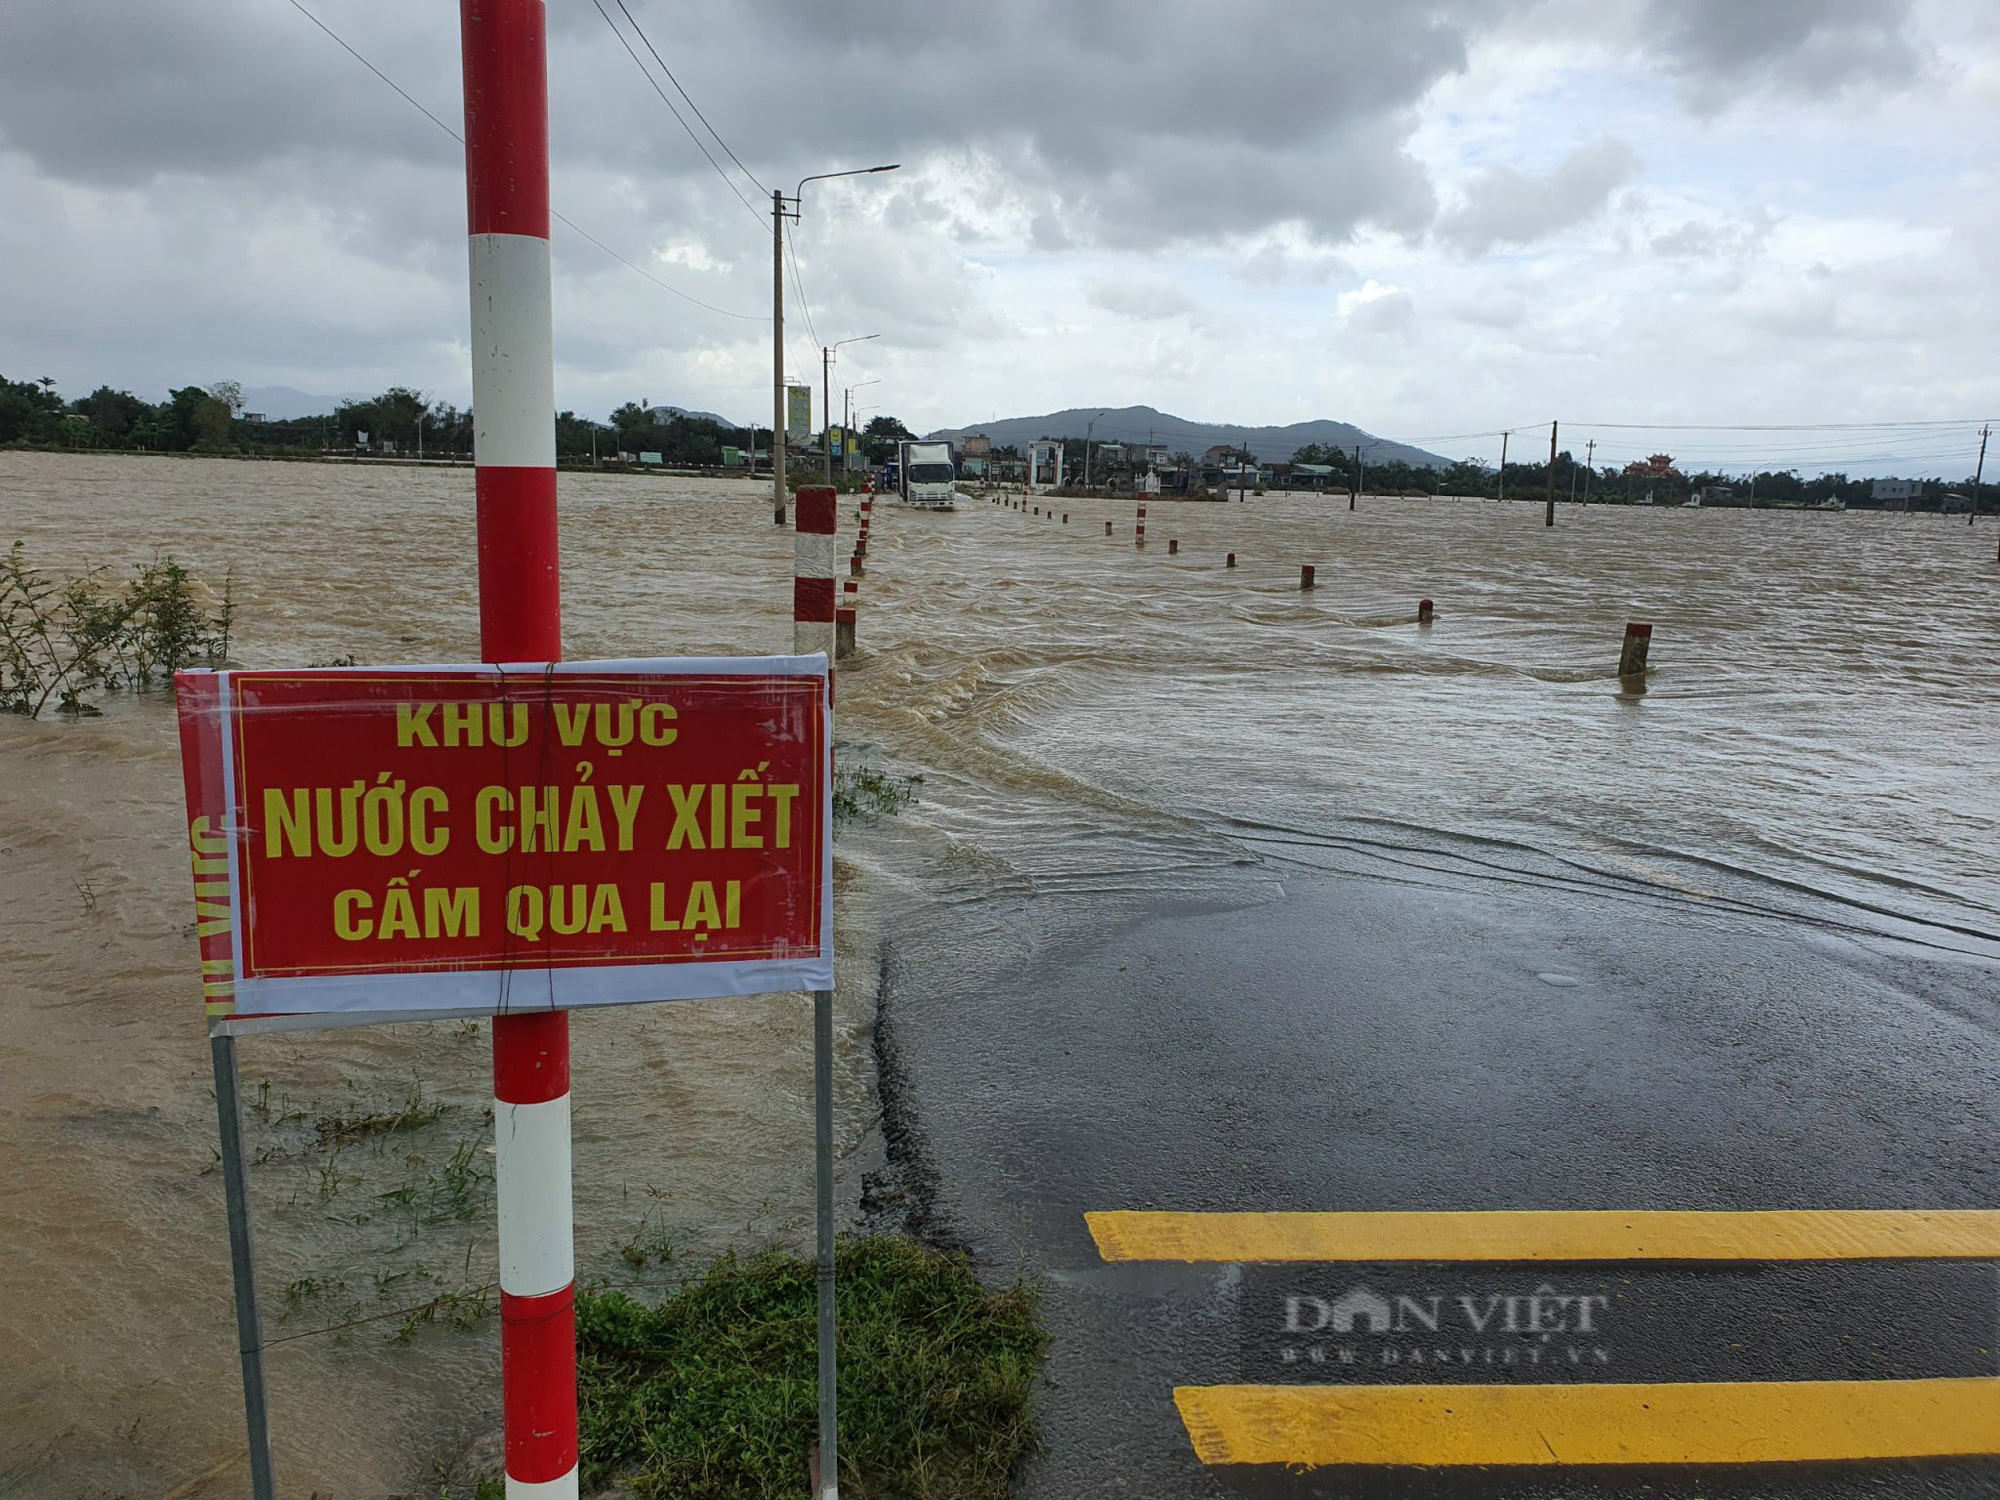 Nhiều tuyến đường tại Bình Định được cắm biển cấm qua lại vì mưa lũ gây chia cắt - Ảnh 3.